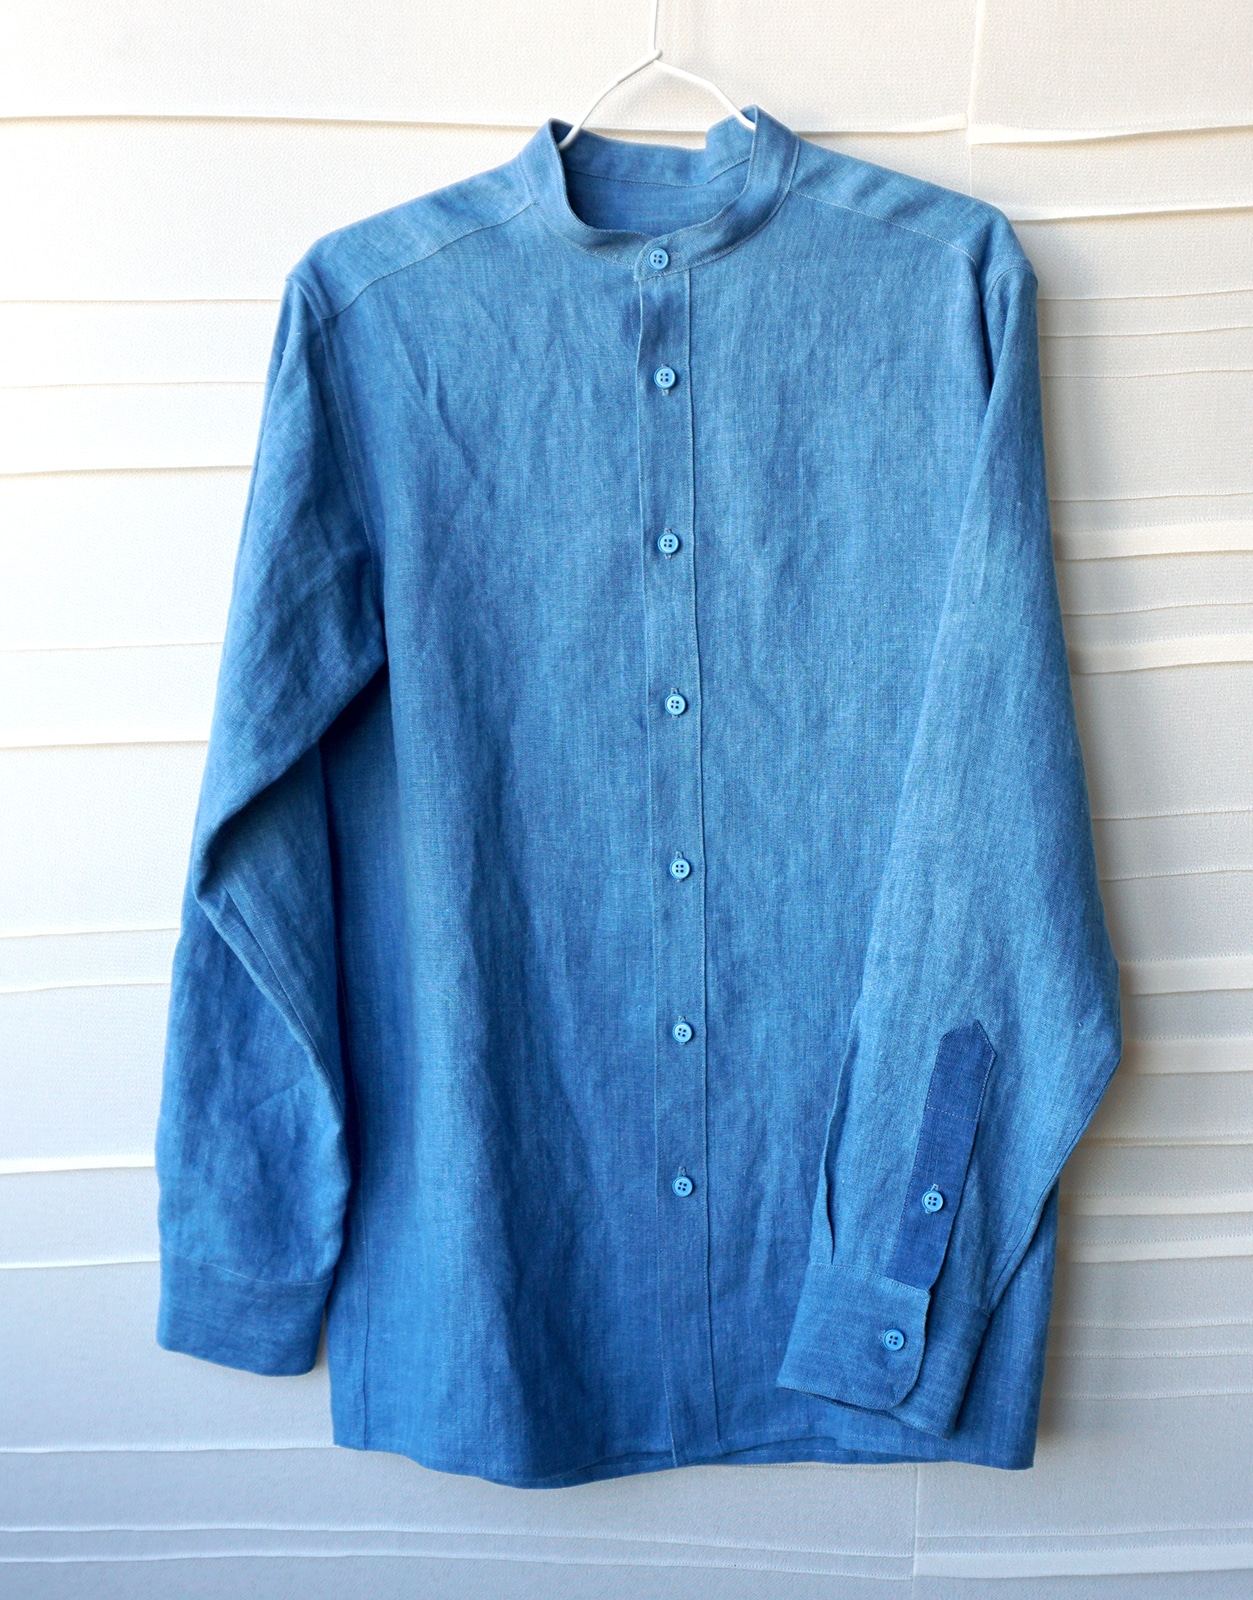 Modele final de chemise – Projet Bleu – Studio sur-mesure